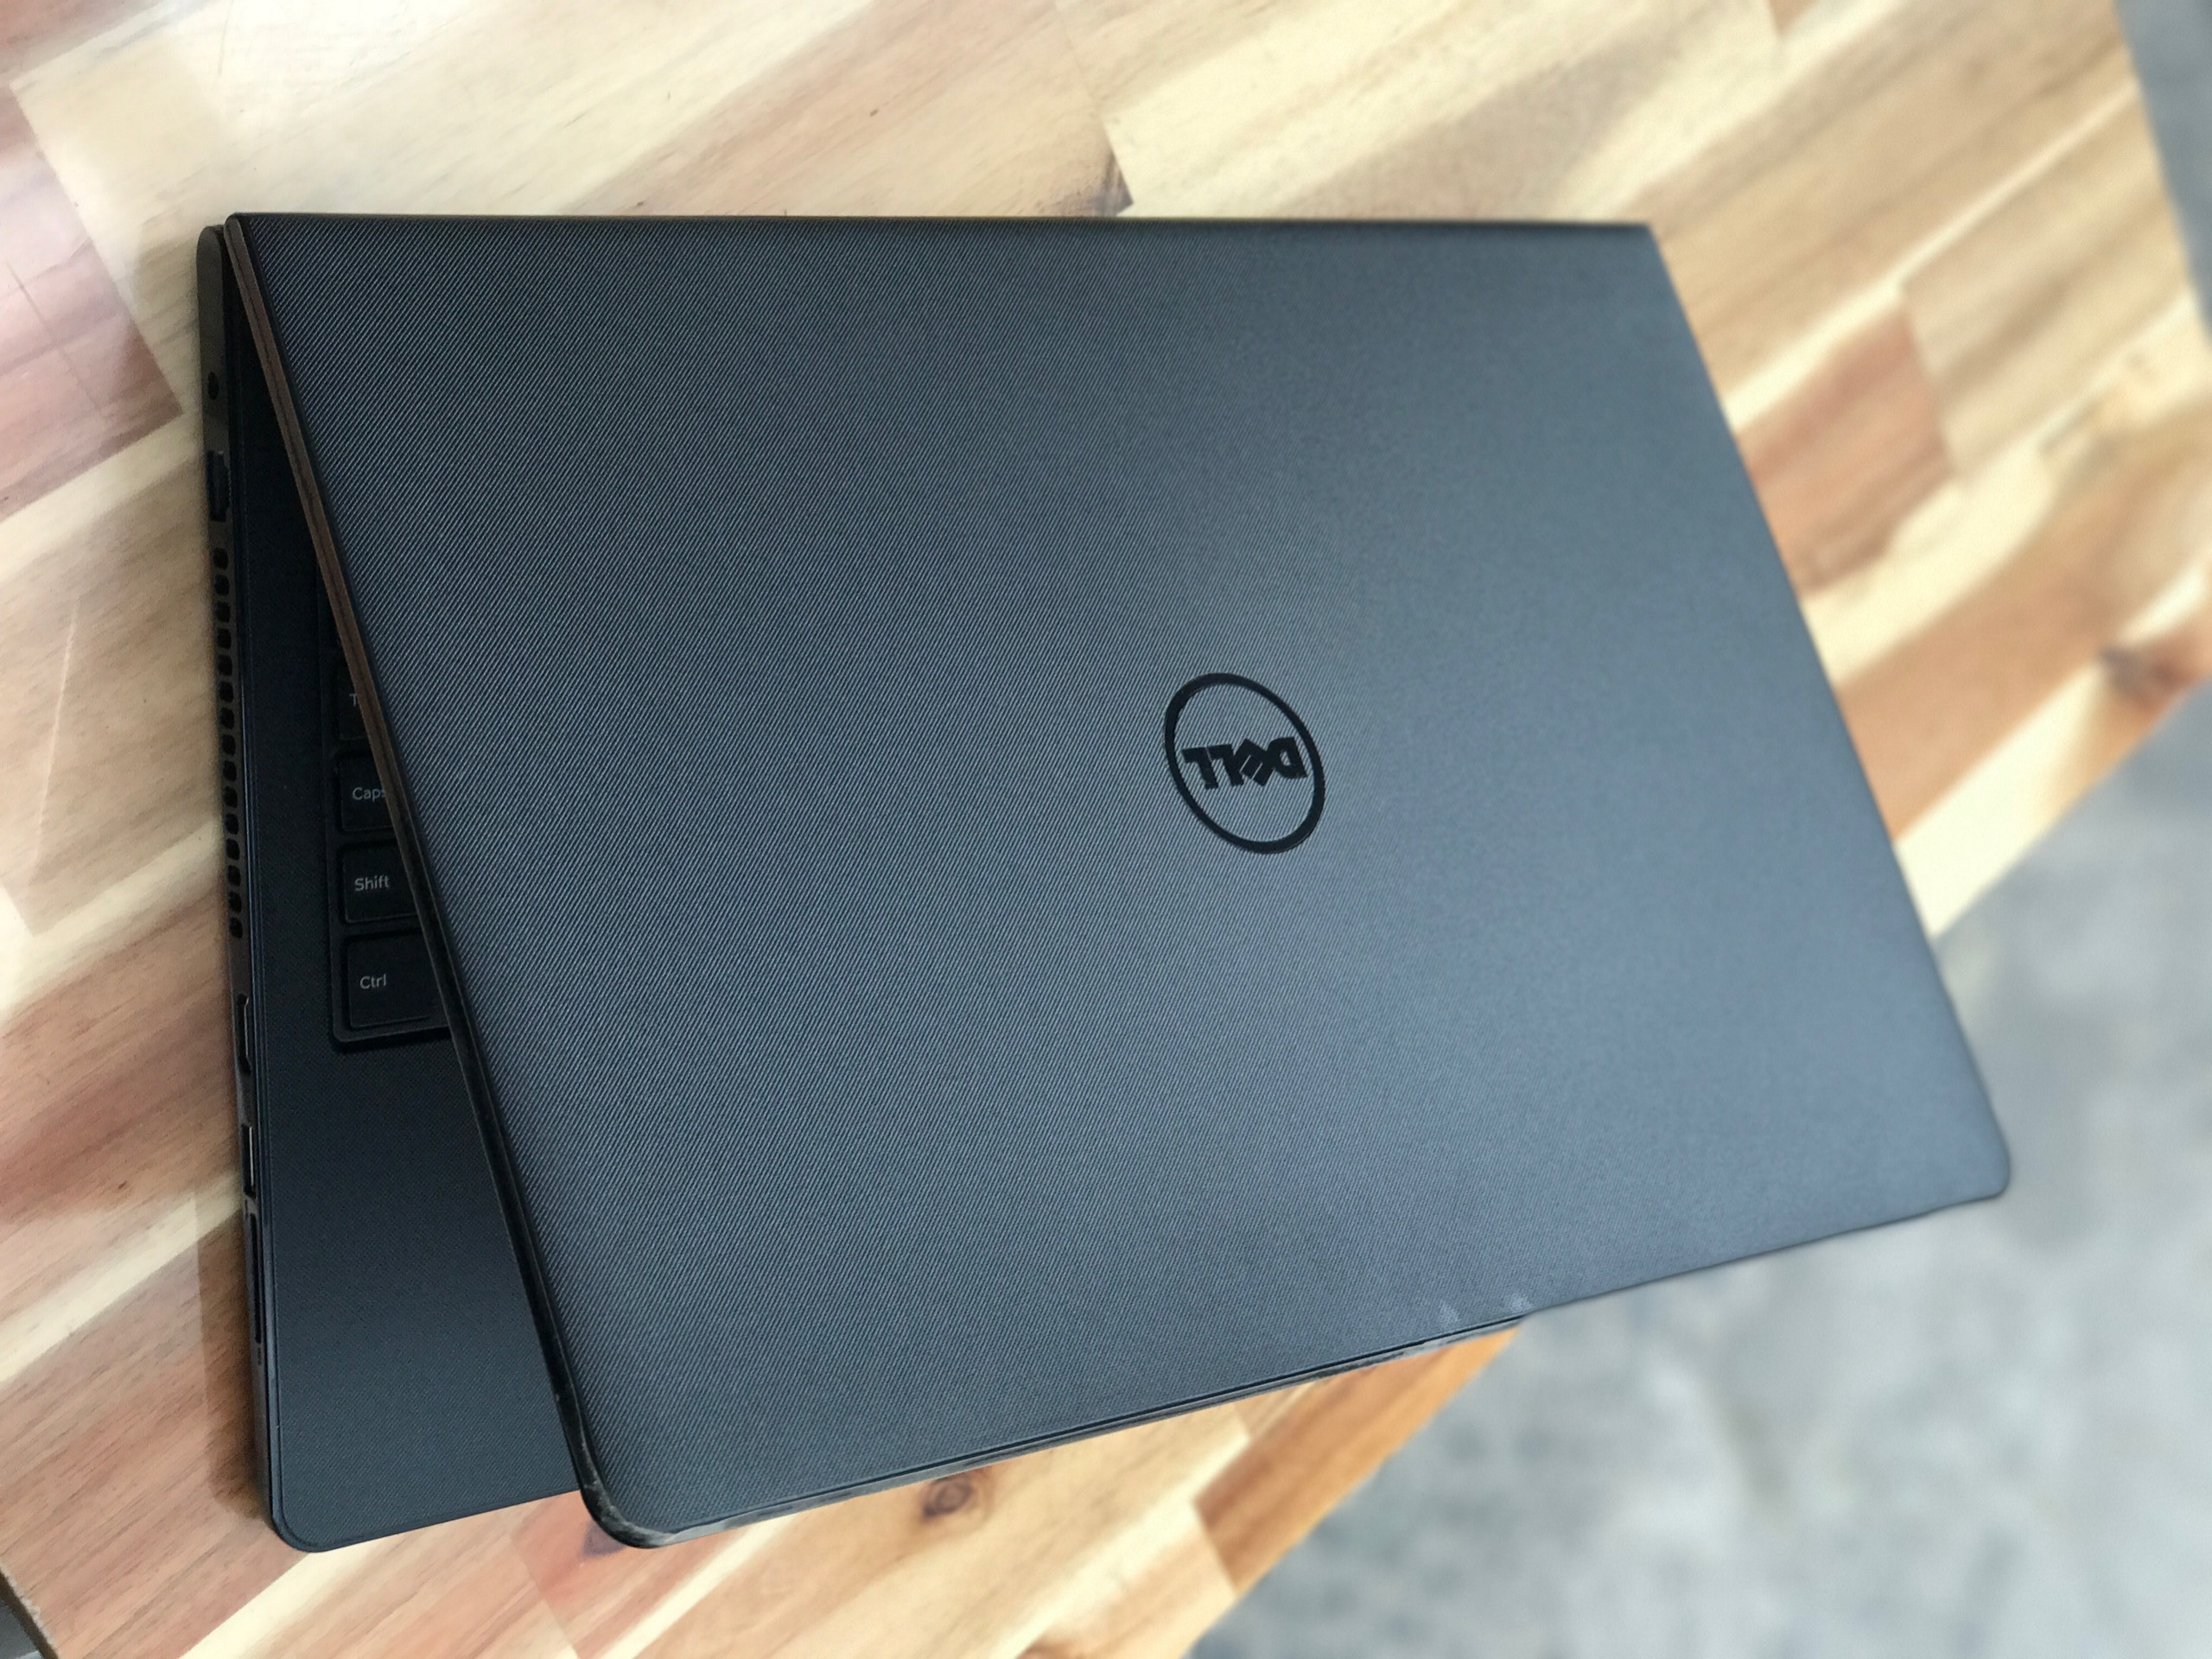 Laptop Dell Inspiron N3567, i5 7200U SSD128+500G Vga 2G Đẹp Keng Zin 100% Giá rẻ4